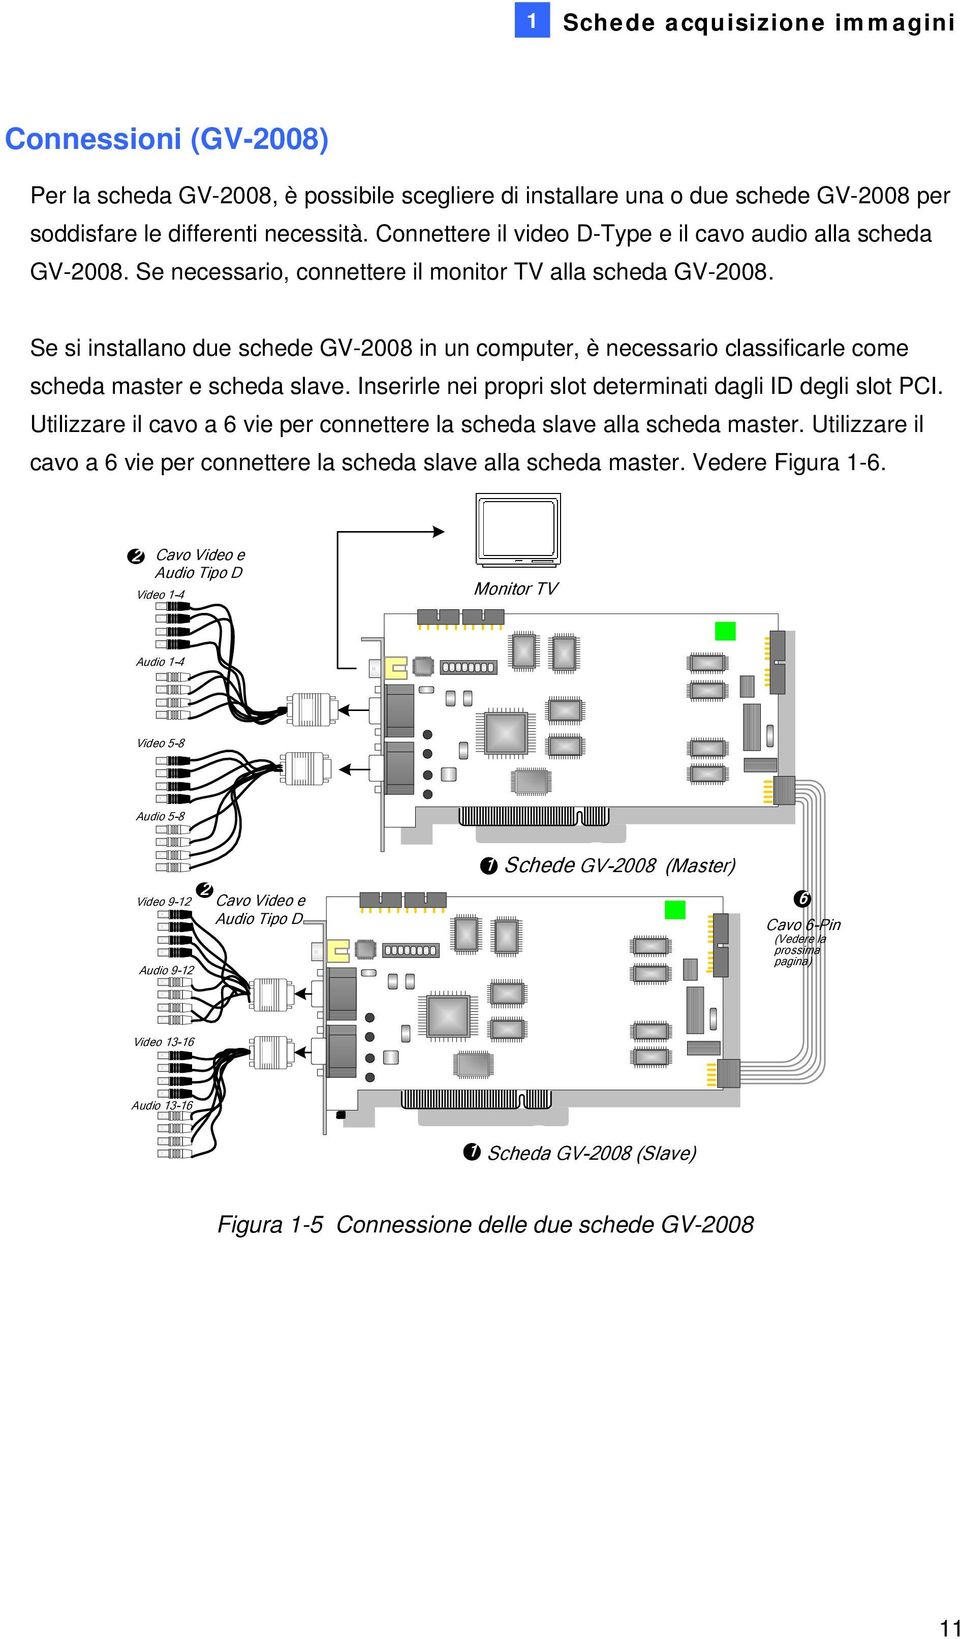 Se si installano due schede GV-2008 in un computer, è necessario classificarle come scheda master e scheda slave. Inserirle nei propri slot determinati dagli ID degli slot PCI.